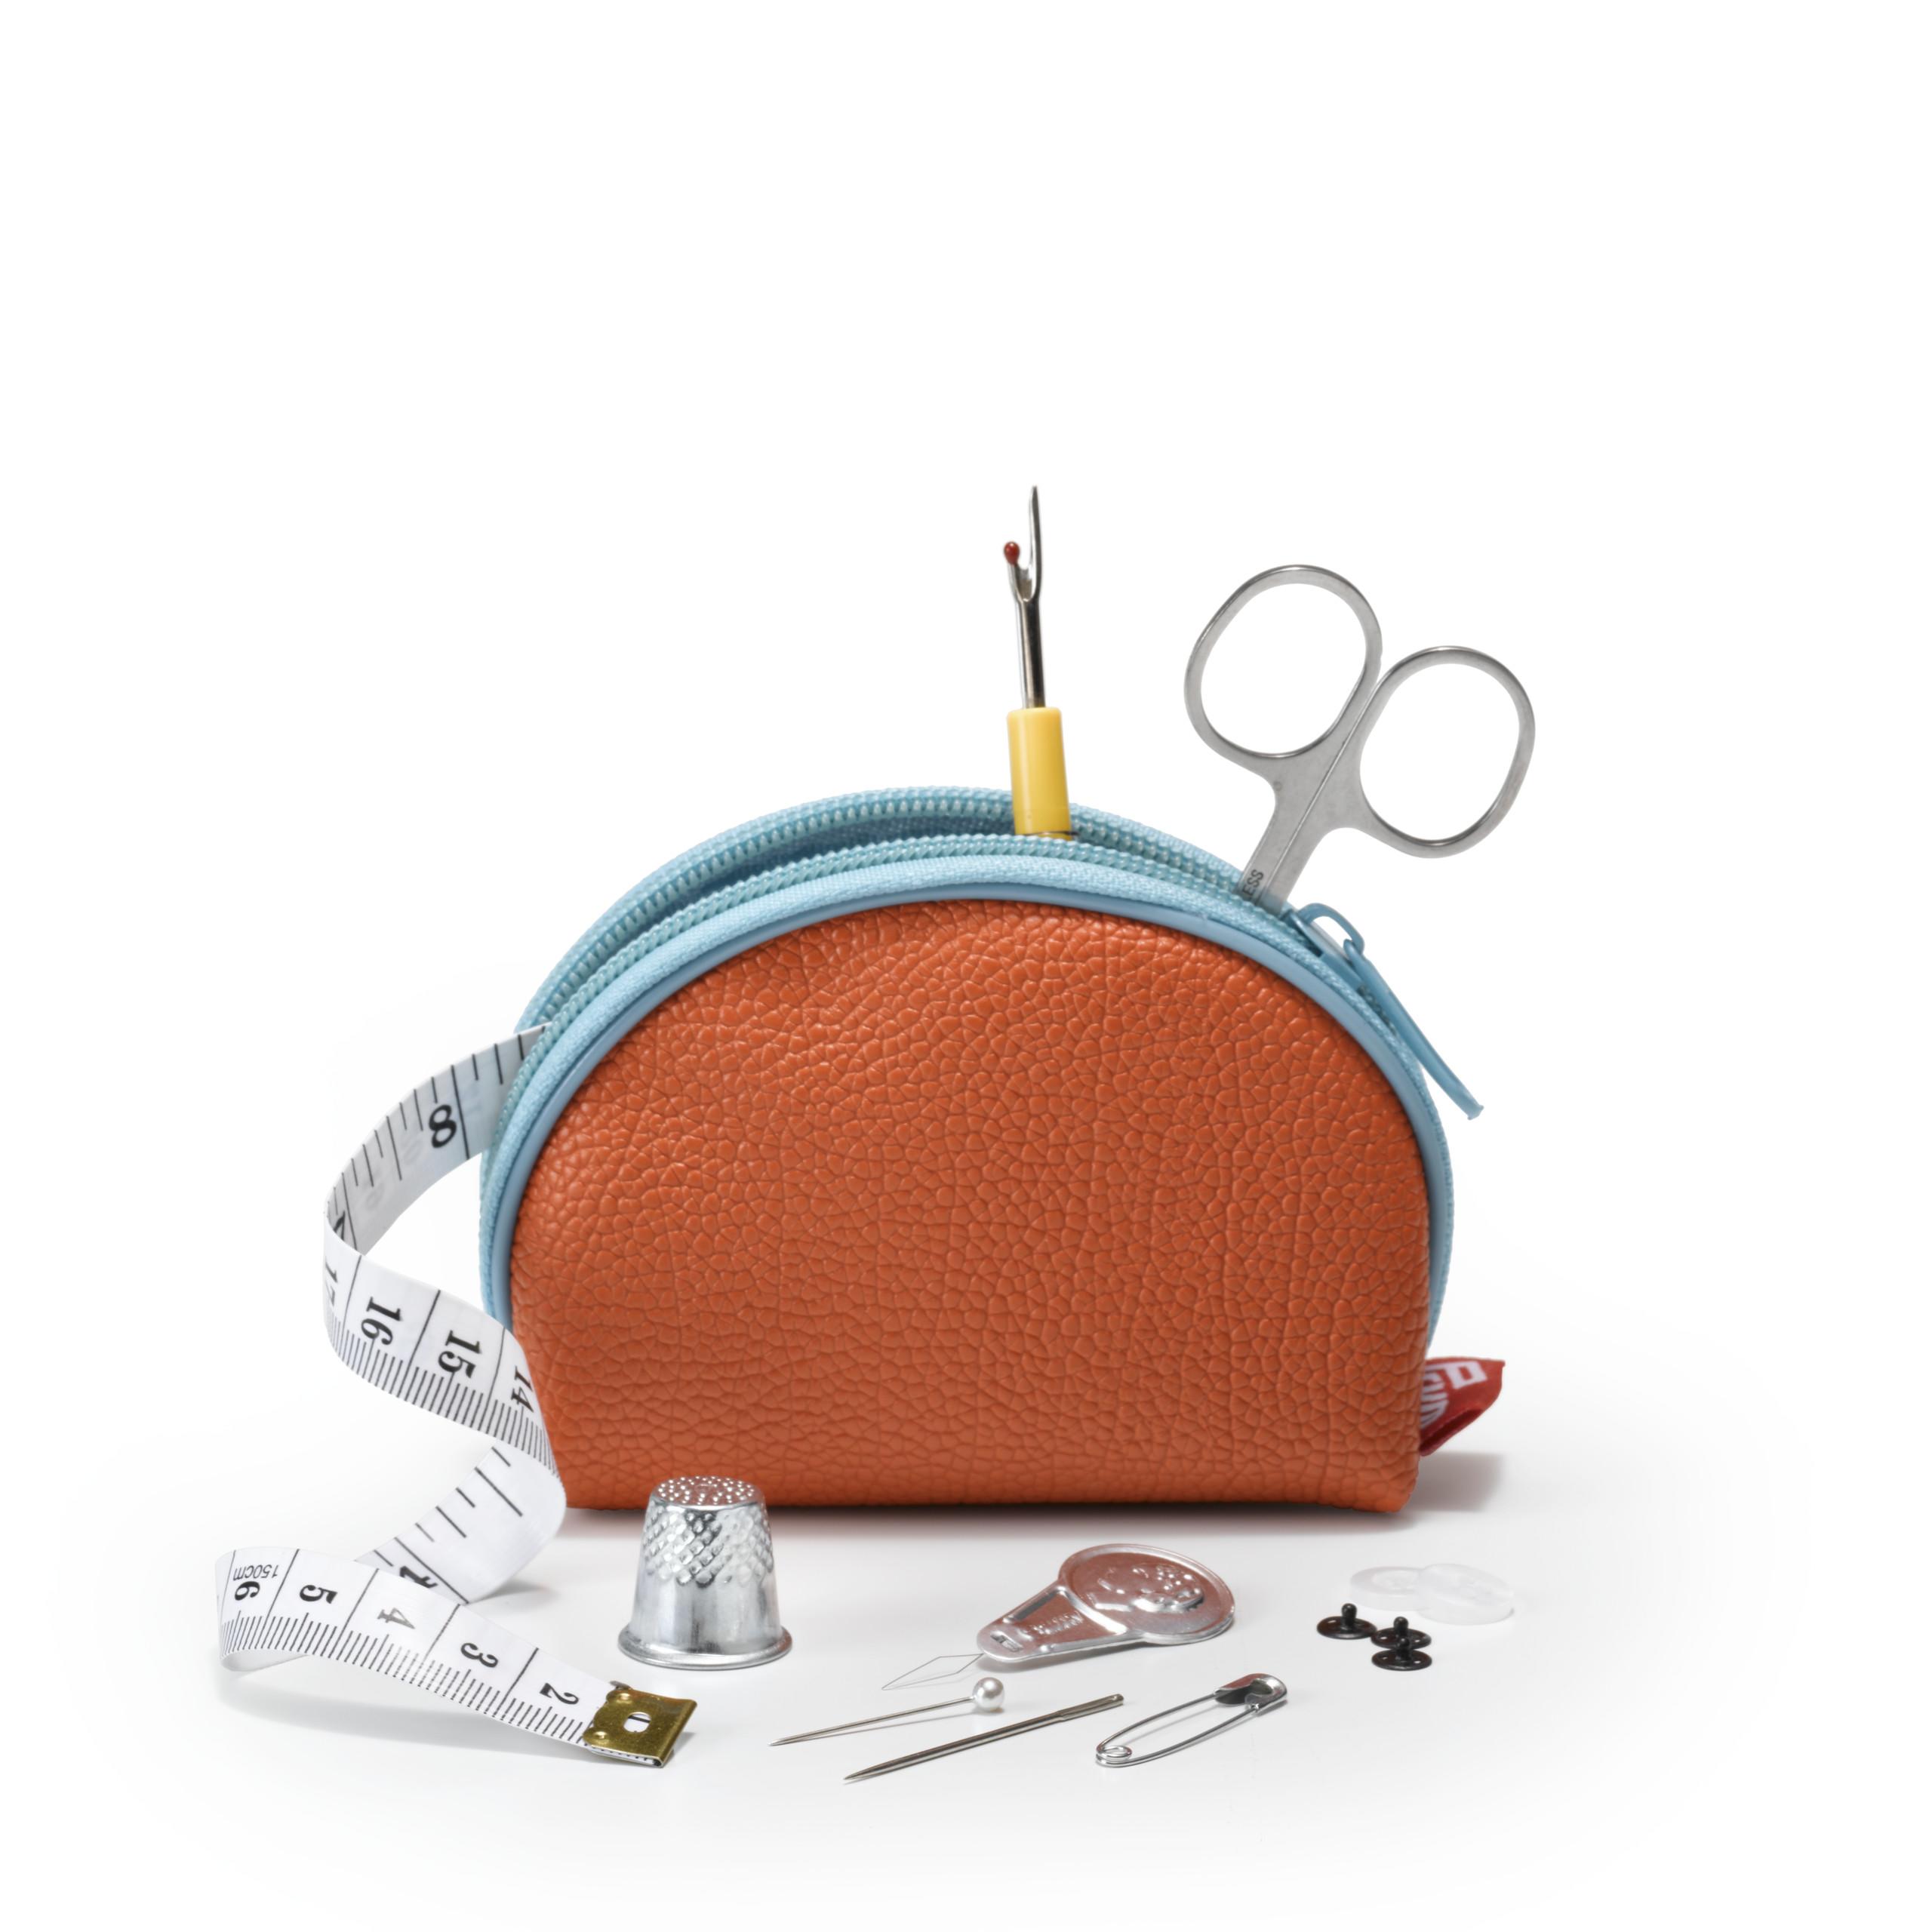 An orange Prym Sewing kit